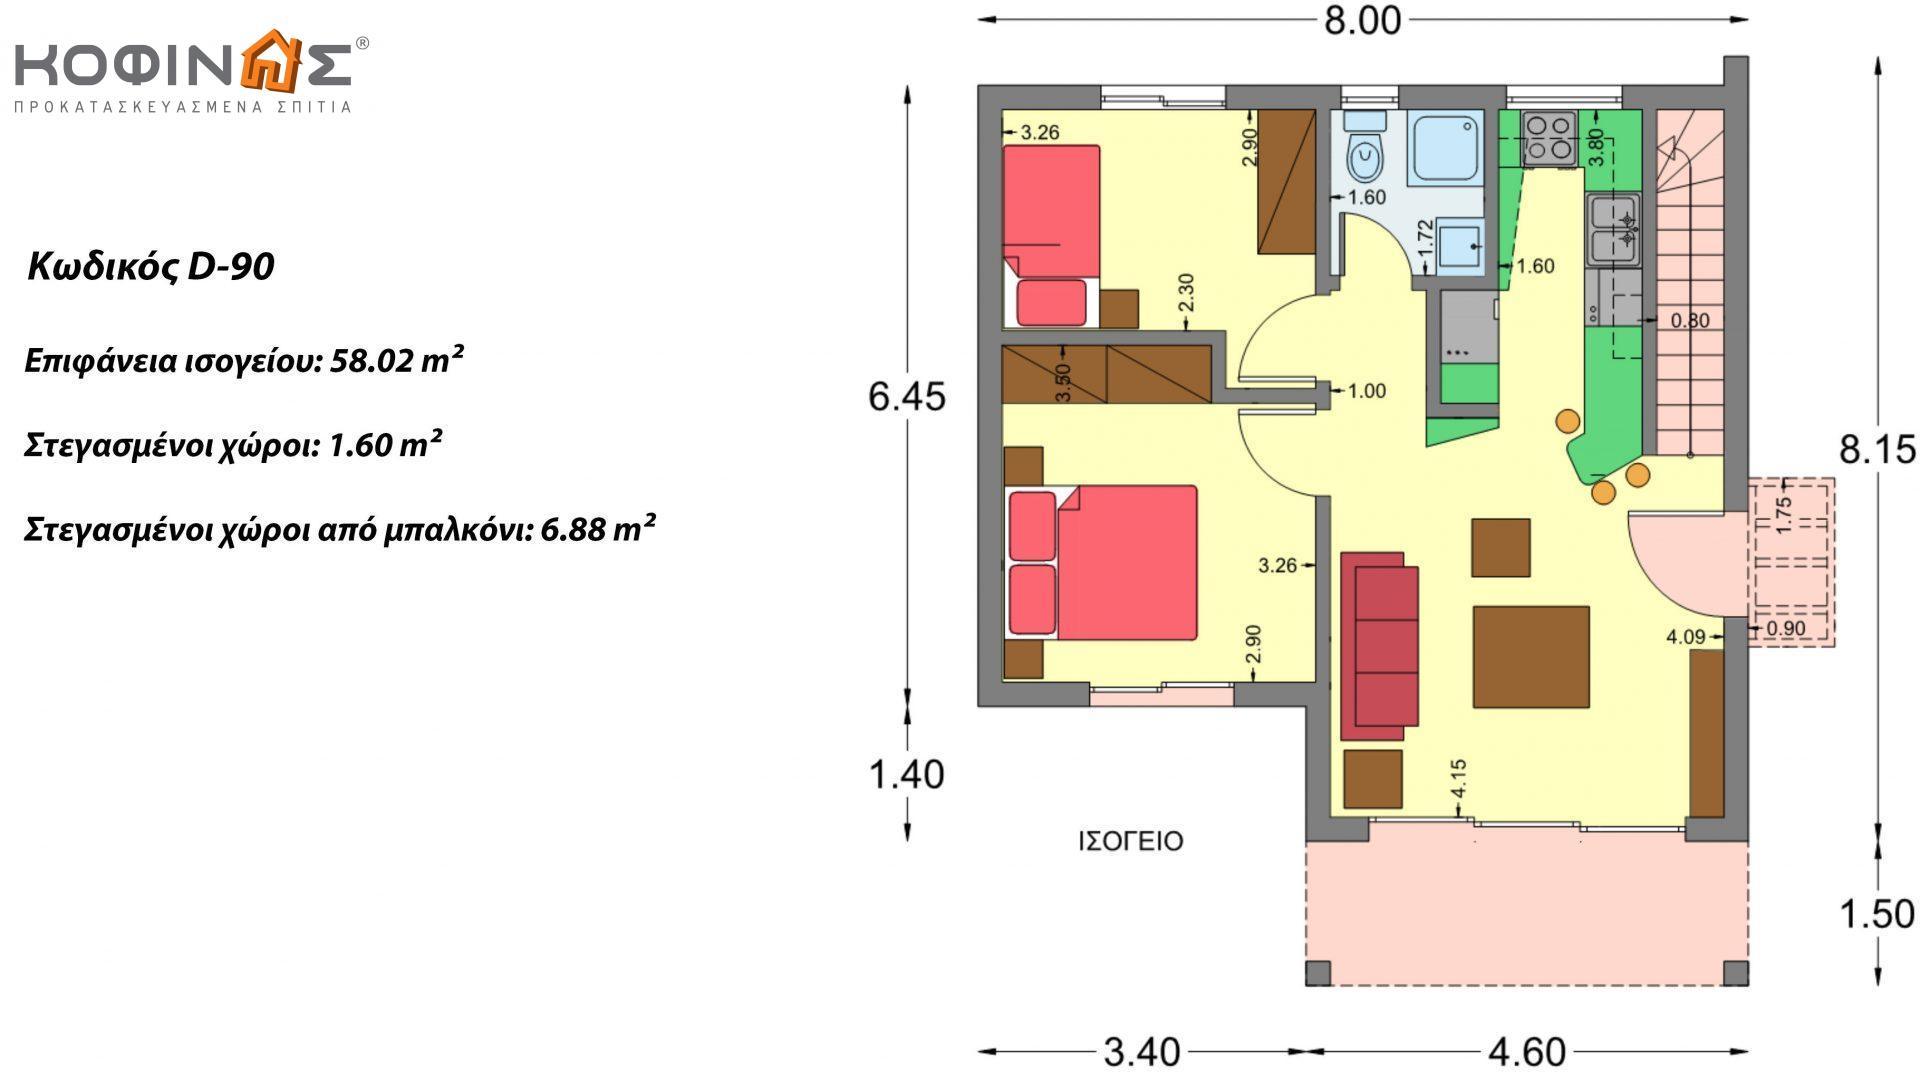 Διώροφη Κατοικία D-90, συνολικής επιφάνειας 90,42 τ.μ., συνολική επιφάνεια στεγασμένων χώρων 25,96 τ.μ., μπαλκόνια 32,54 τ.μ.